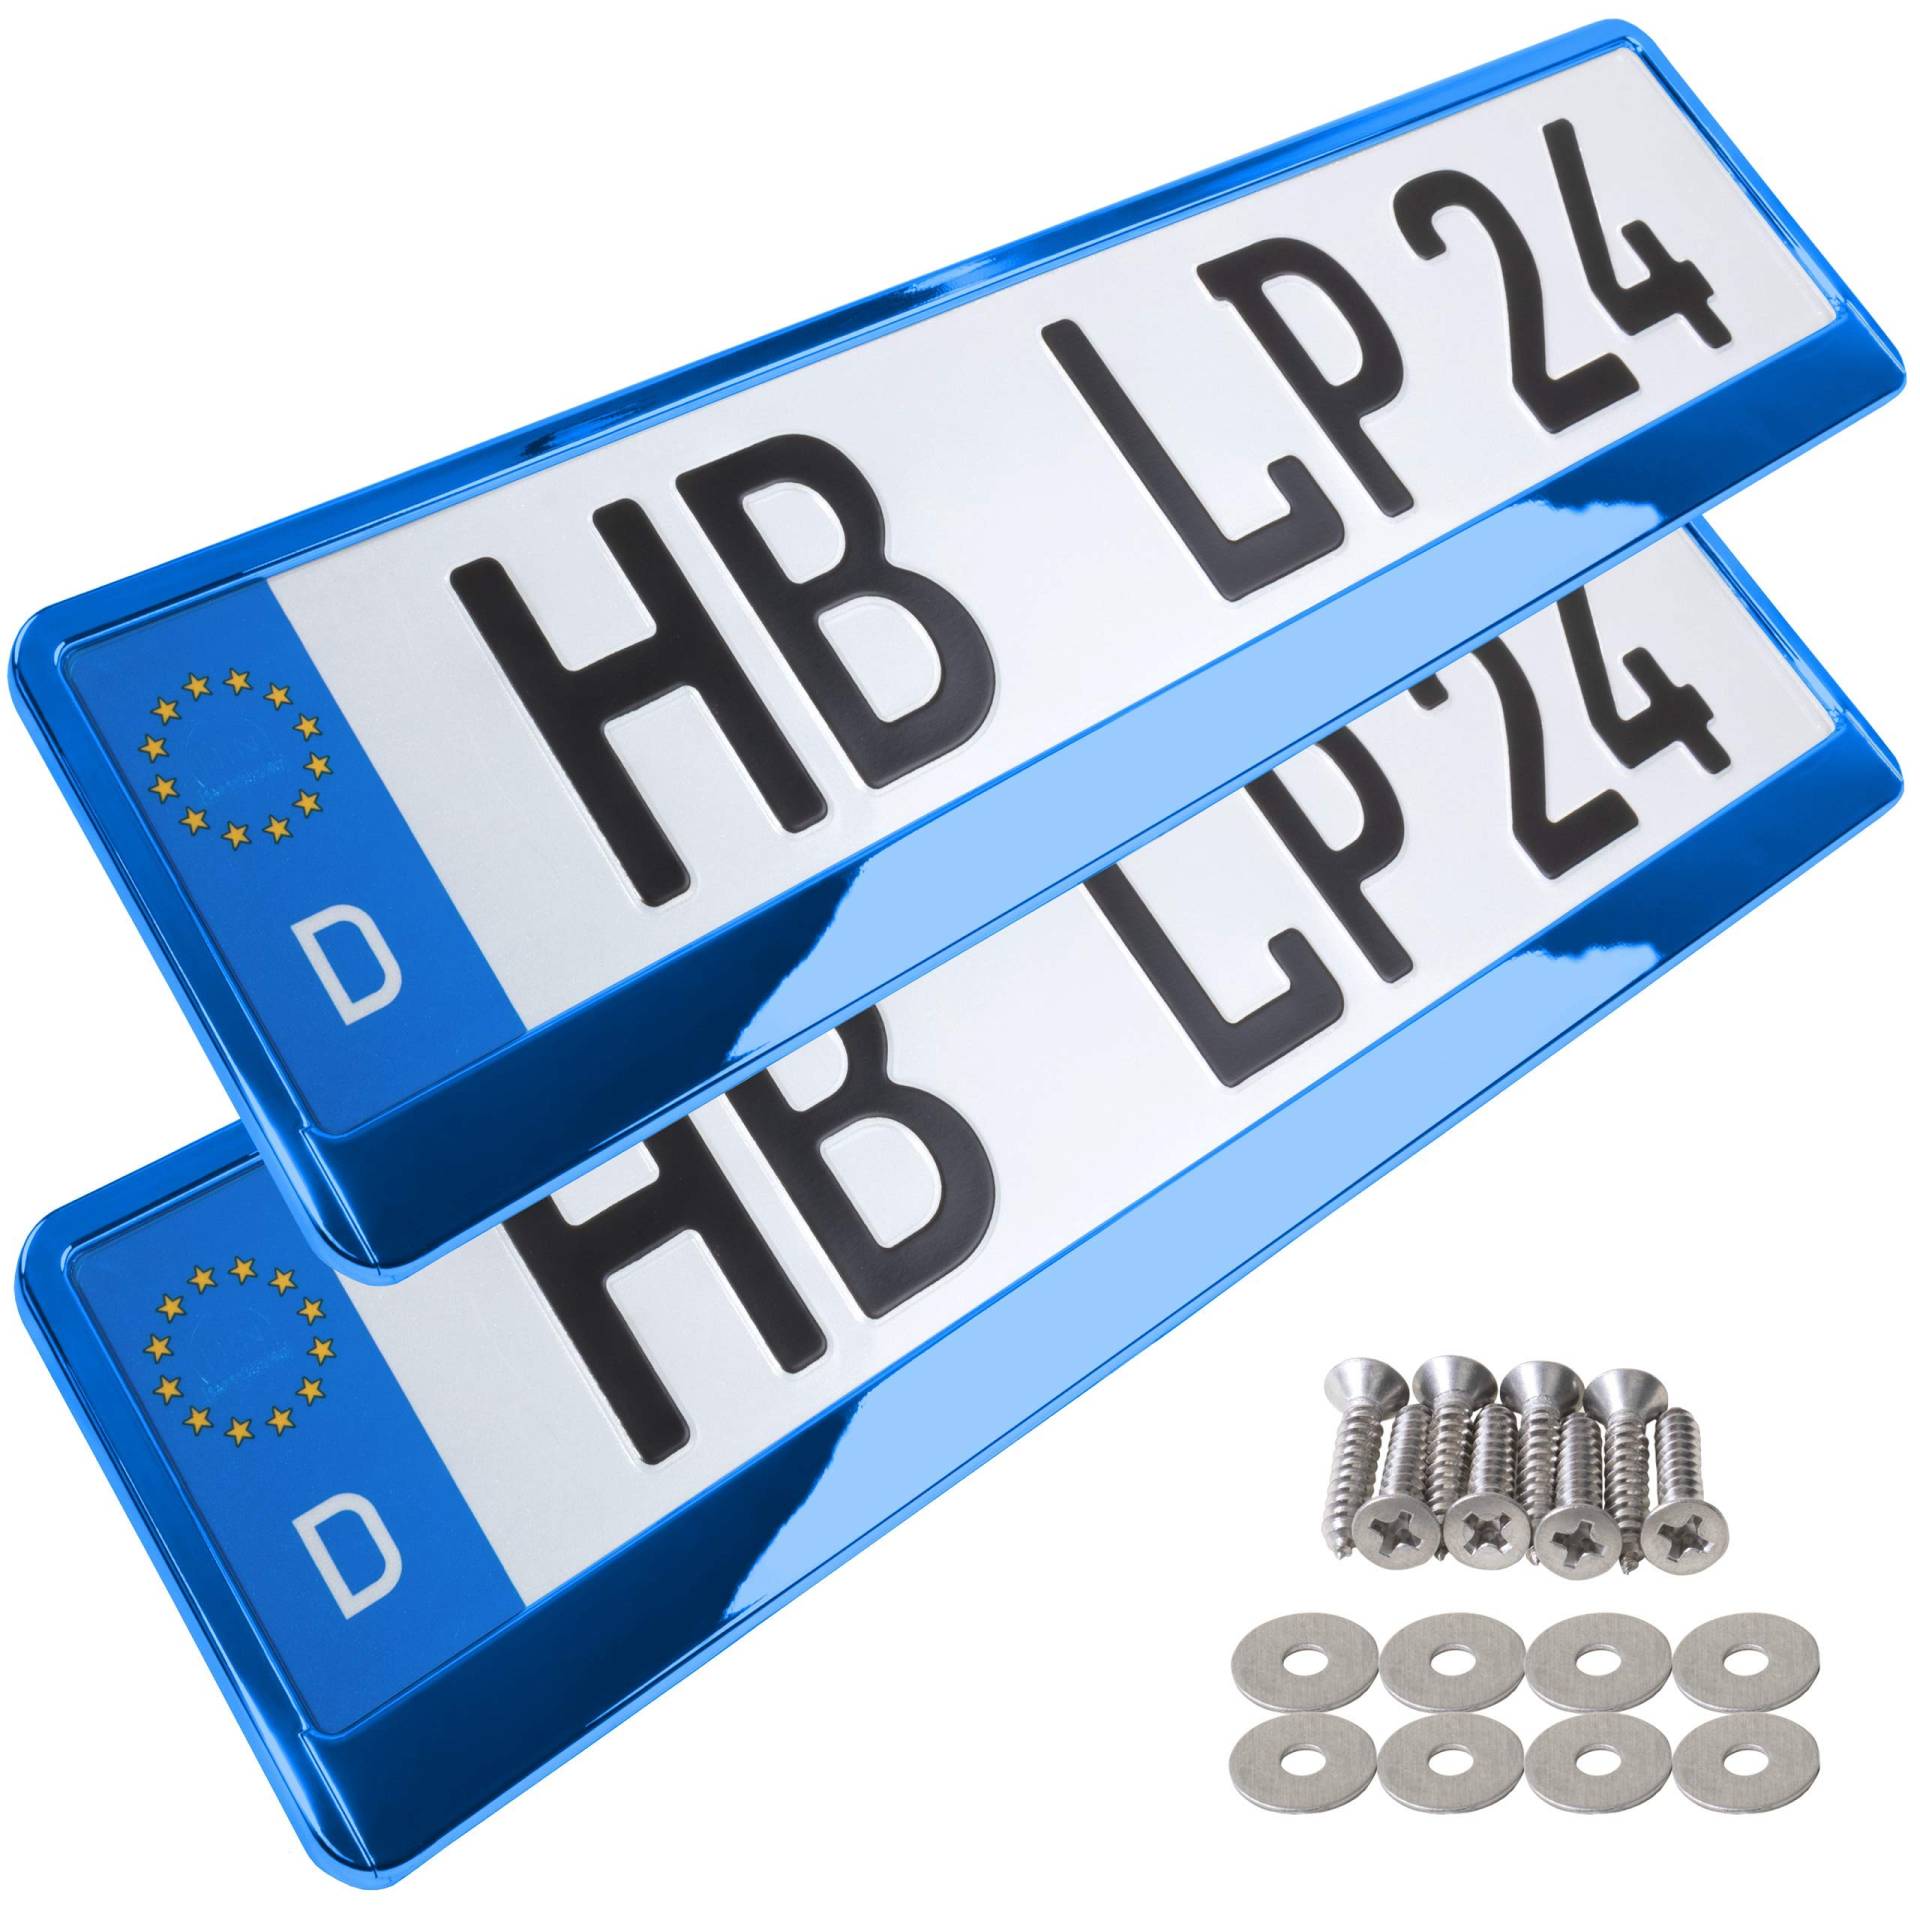 A159 Kennzeichenhalter 2 Stück Auto Nummernschildhalter blau chrom Kennzeichenverstärker Kennzeichenhalterung Nummernschildhalterung Verstärker Halter für Kennzeichen Nummernschild edel glänzend von L & P Car Design